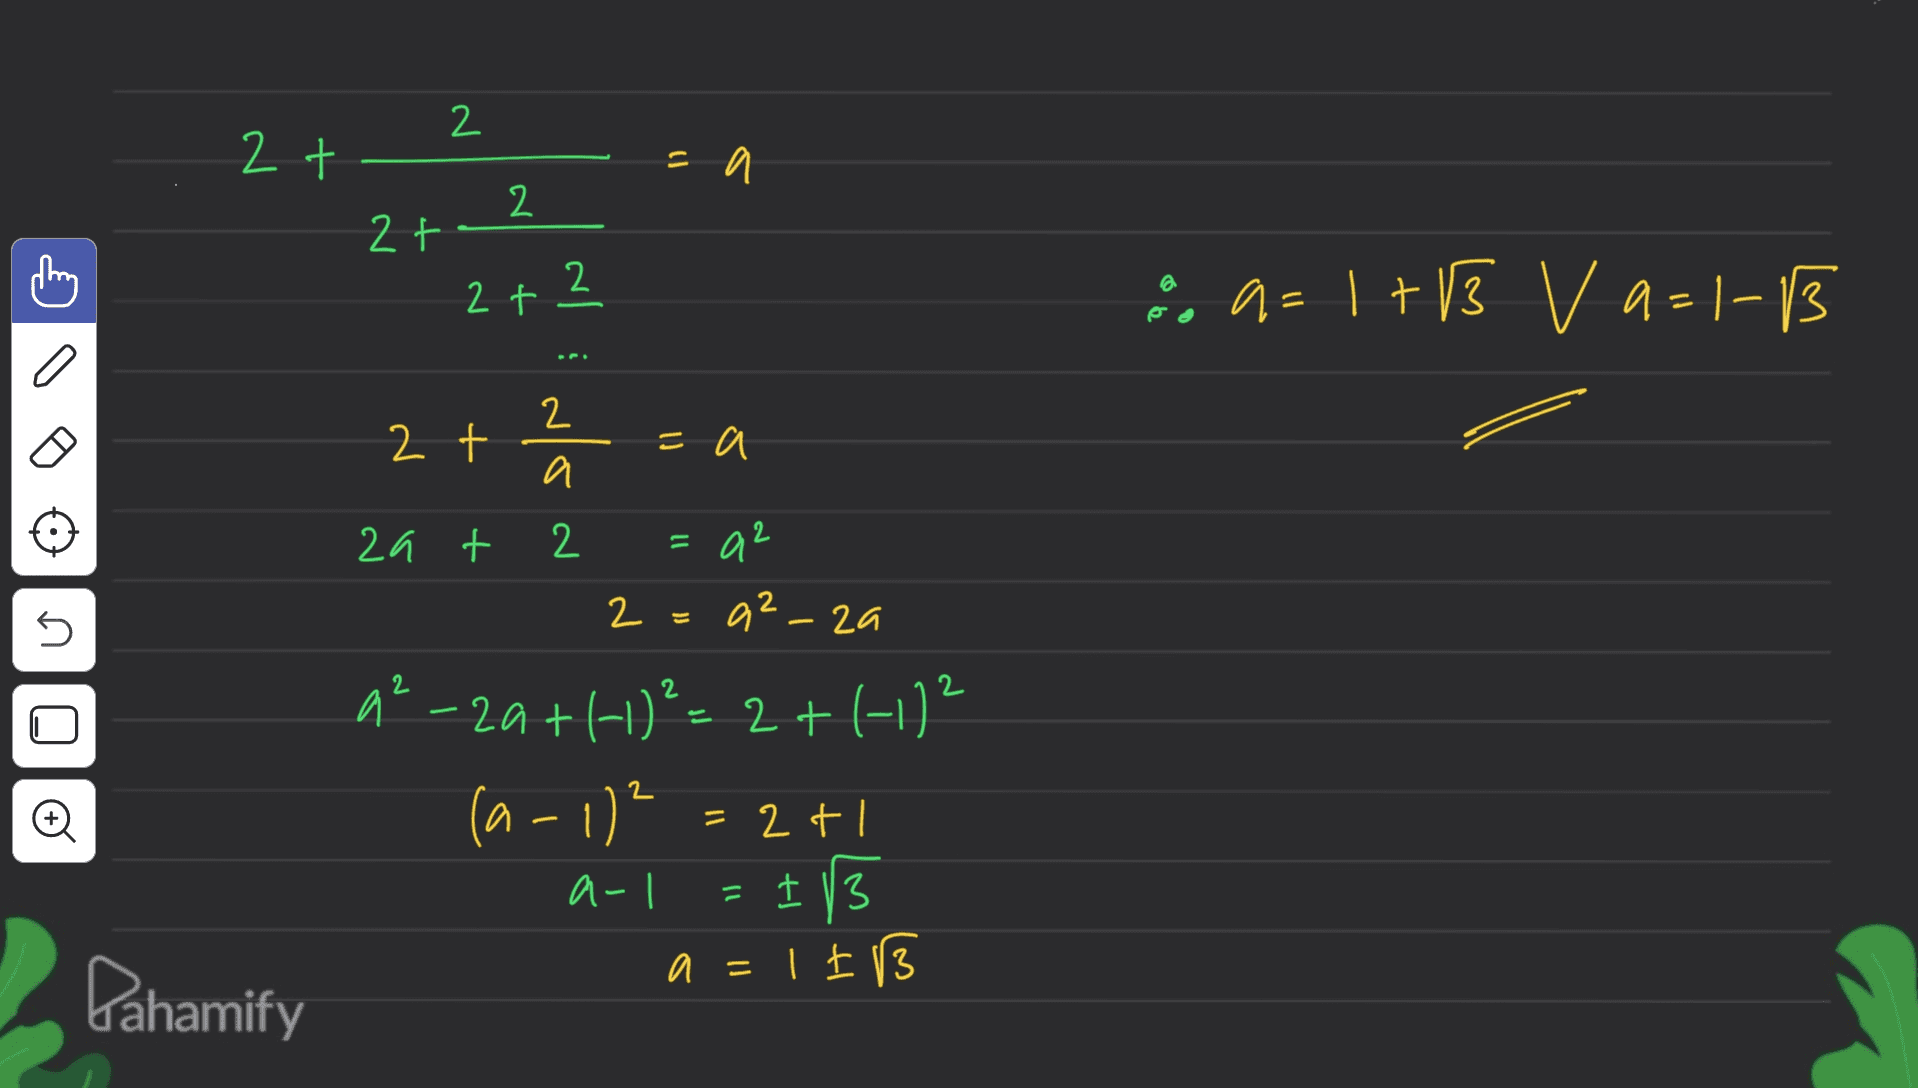 2 2 t =a 2 2 to 2 2+ Ca- +13 V 9-1-13 = C 2 2 t =a a za + 2 =a2 2 5 = az-za 2 2 © a²-20+1+)²= 2 + (-11² (a-1)? = 1/3 a=1IB = 2+ a- = Dahamify 